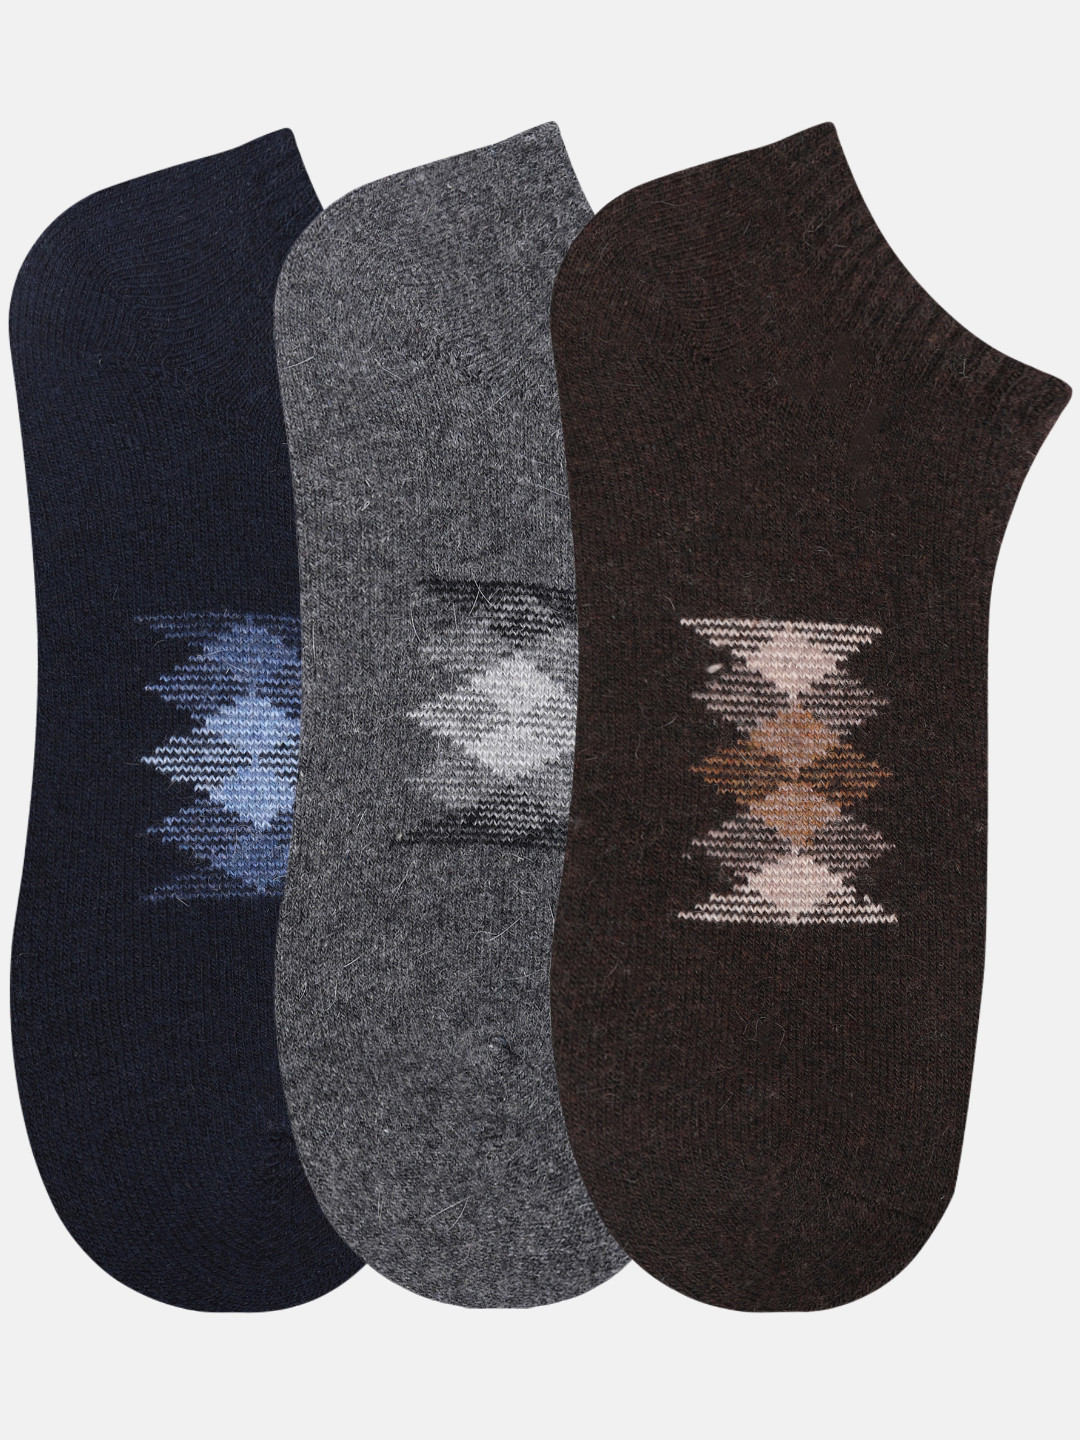 NEXT2SKIN Men Woolen Loafer Socks (Pack of 3) (Navy Blue,Dark Grey,Brown) 5929-NDGBR